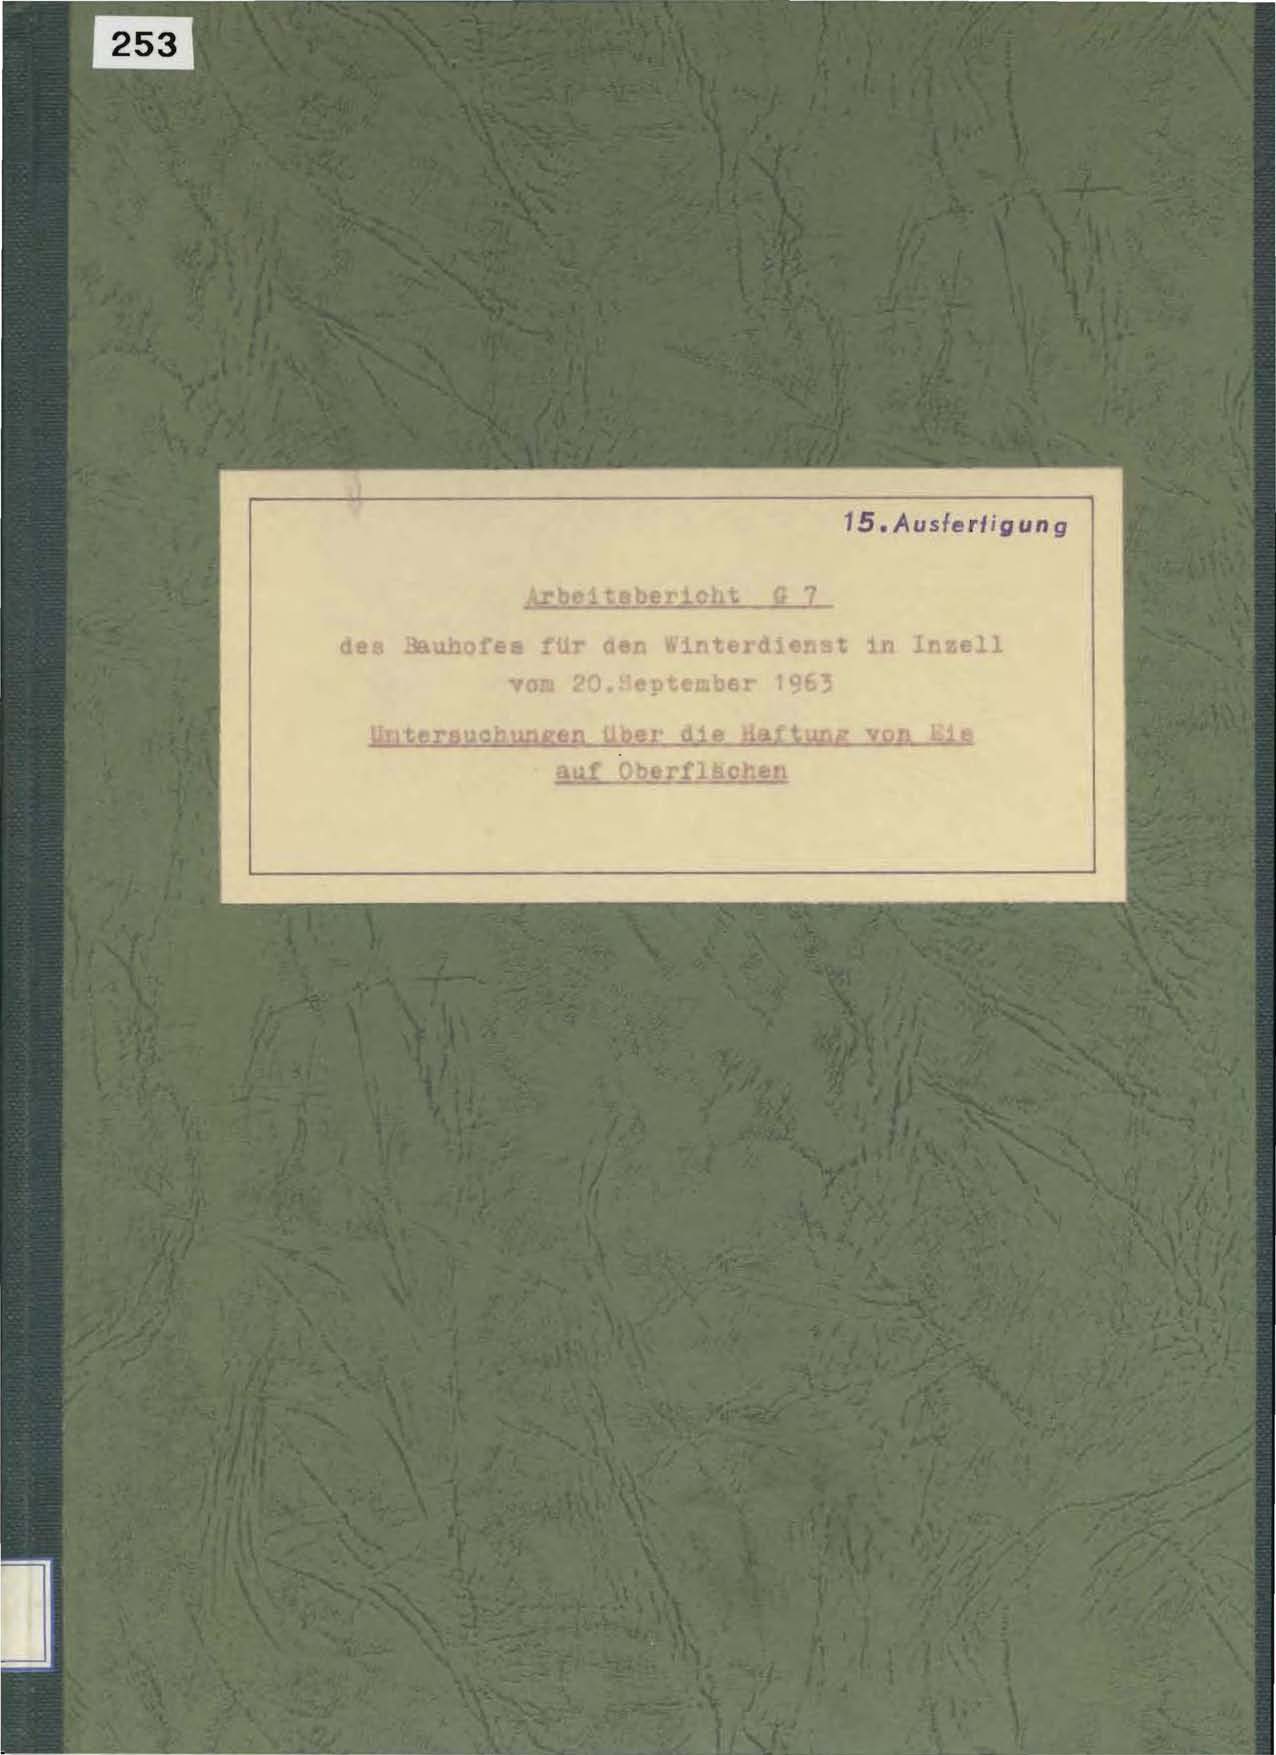 Arbeitsbericht G7 des Bauhofes für den Winterdienst in Inzell vom 20. September 1963